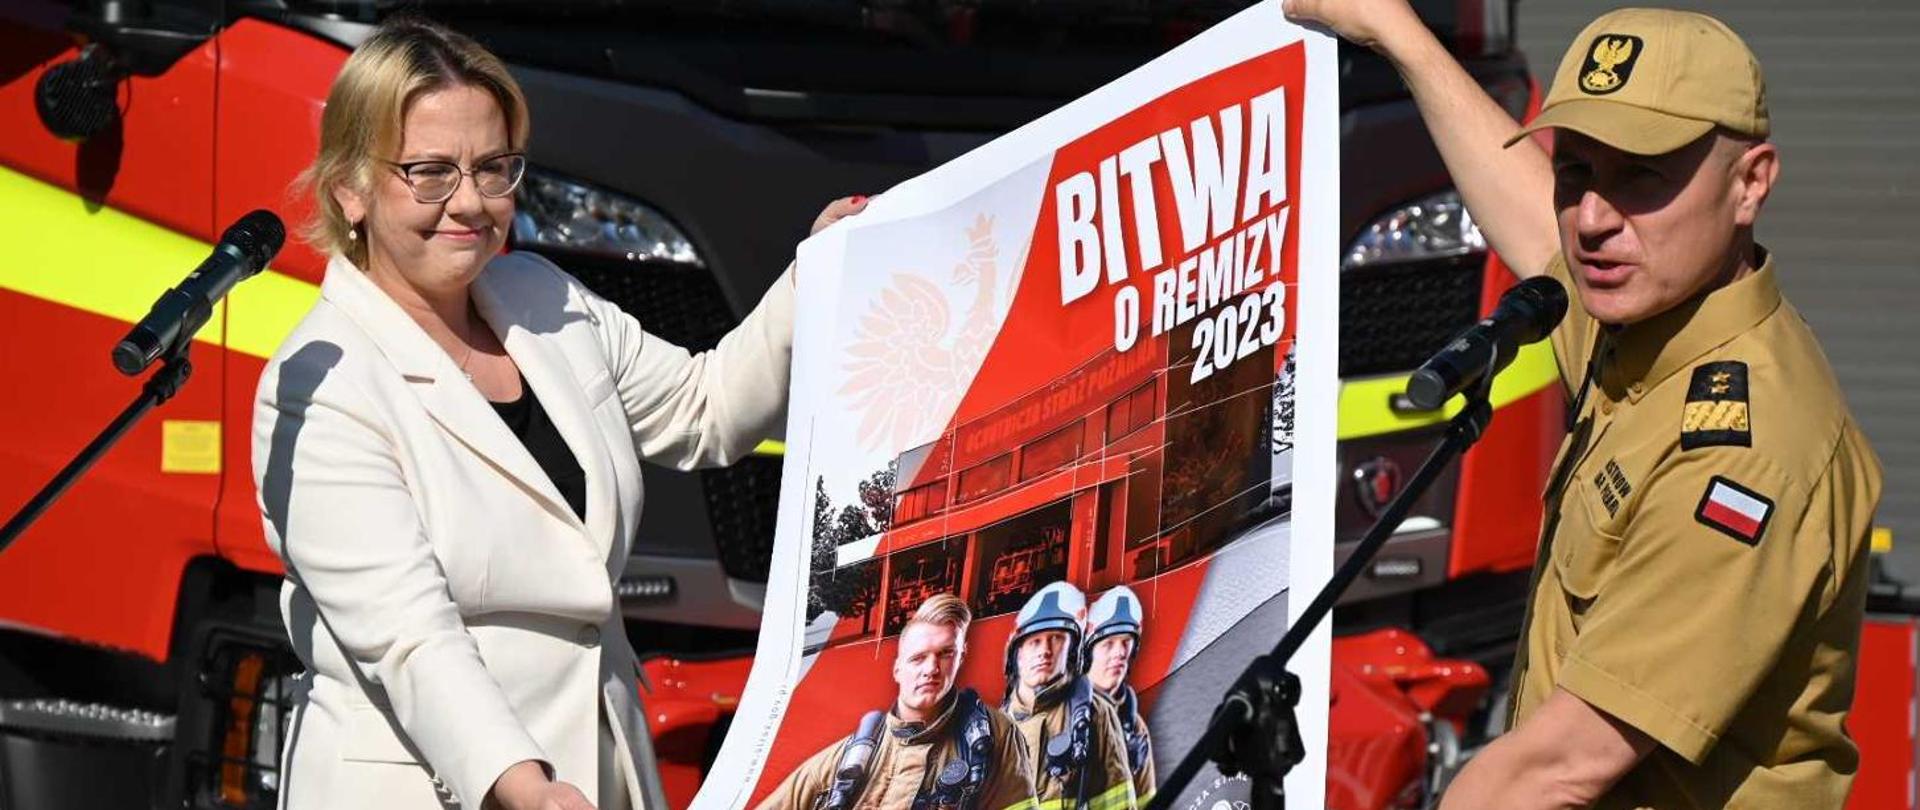 Z lewej Pani Minister Anna Moskwa w białym żakiecie i spodniach, z prawej Komendant Główny PSP w żółtym mundurze służbowym, obydwoje trzymają plakat akcji Bitwa o Remizy. W tle pojazdy pożarnicze ciężarowe koloru czerwonego.